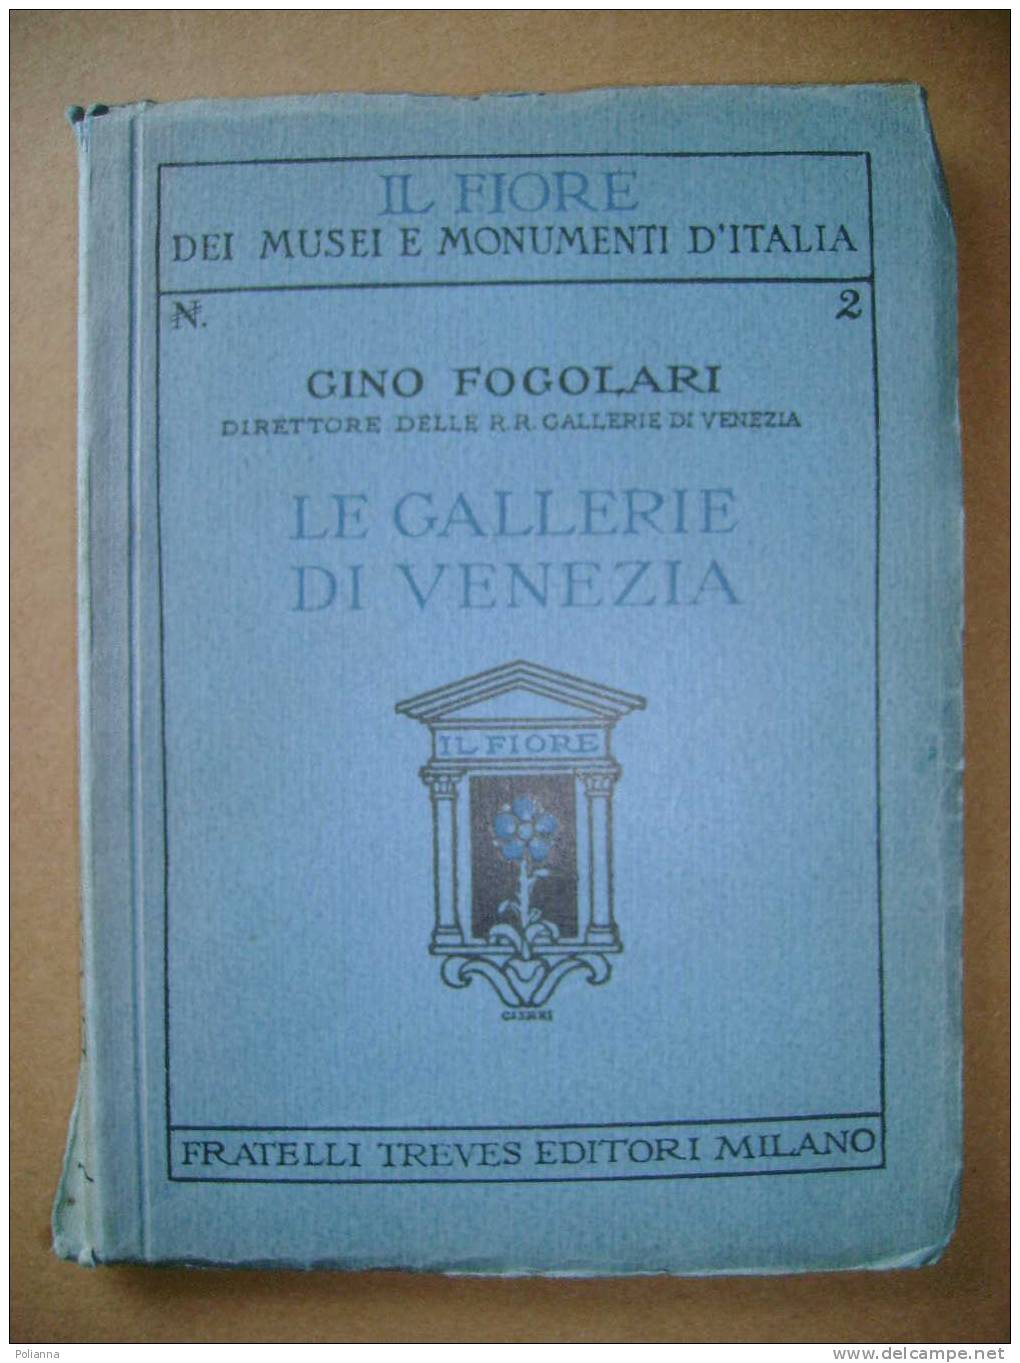 PAE/13 Gino Fogolari IL FIORE - LE GALLERIE DI VENEZIA Treves Anni '30 - Arts, Architecture